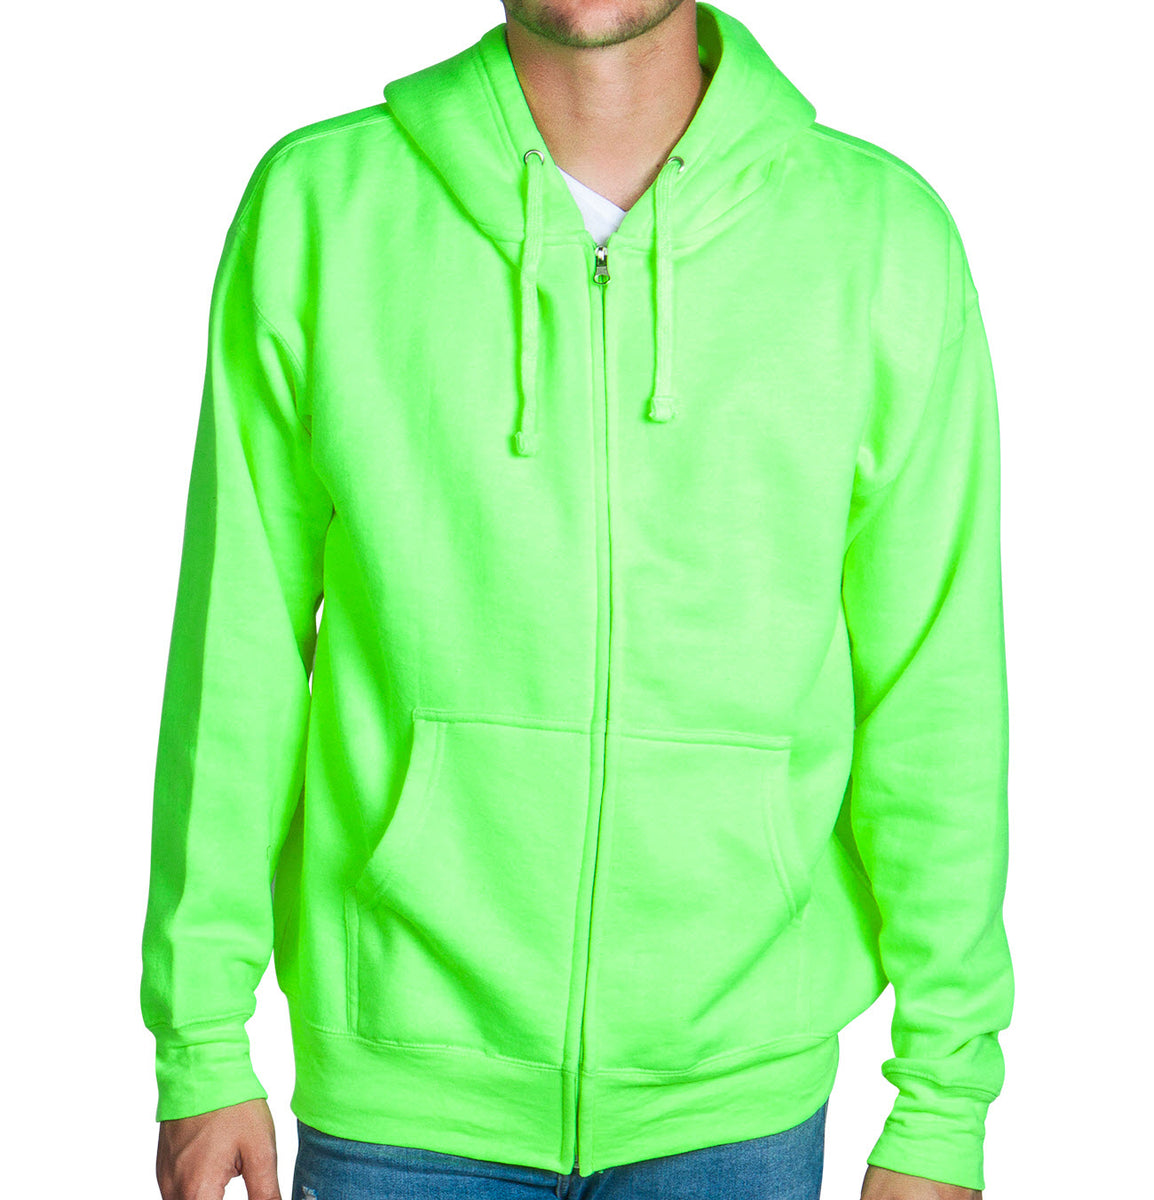 Neon Green Zip Up Hoodie Sweatshirt Flex Suits